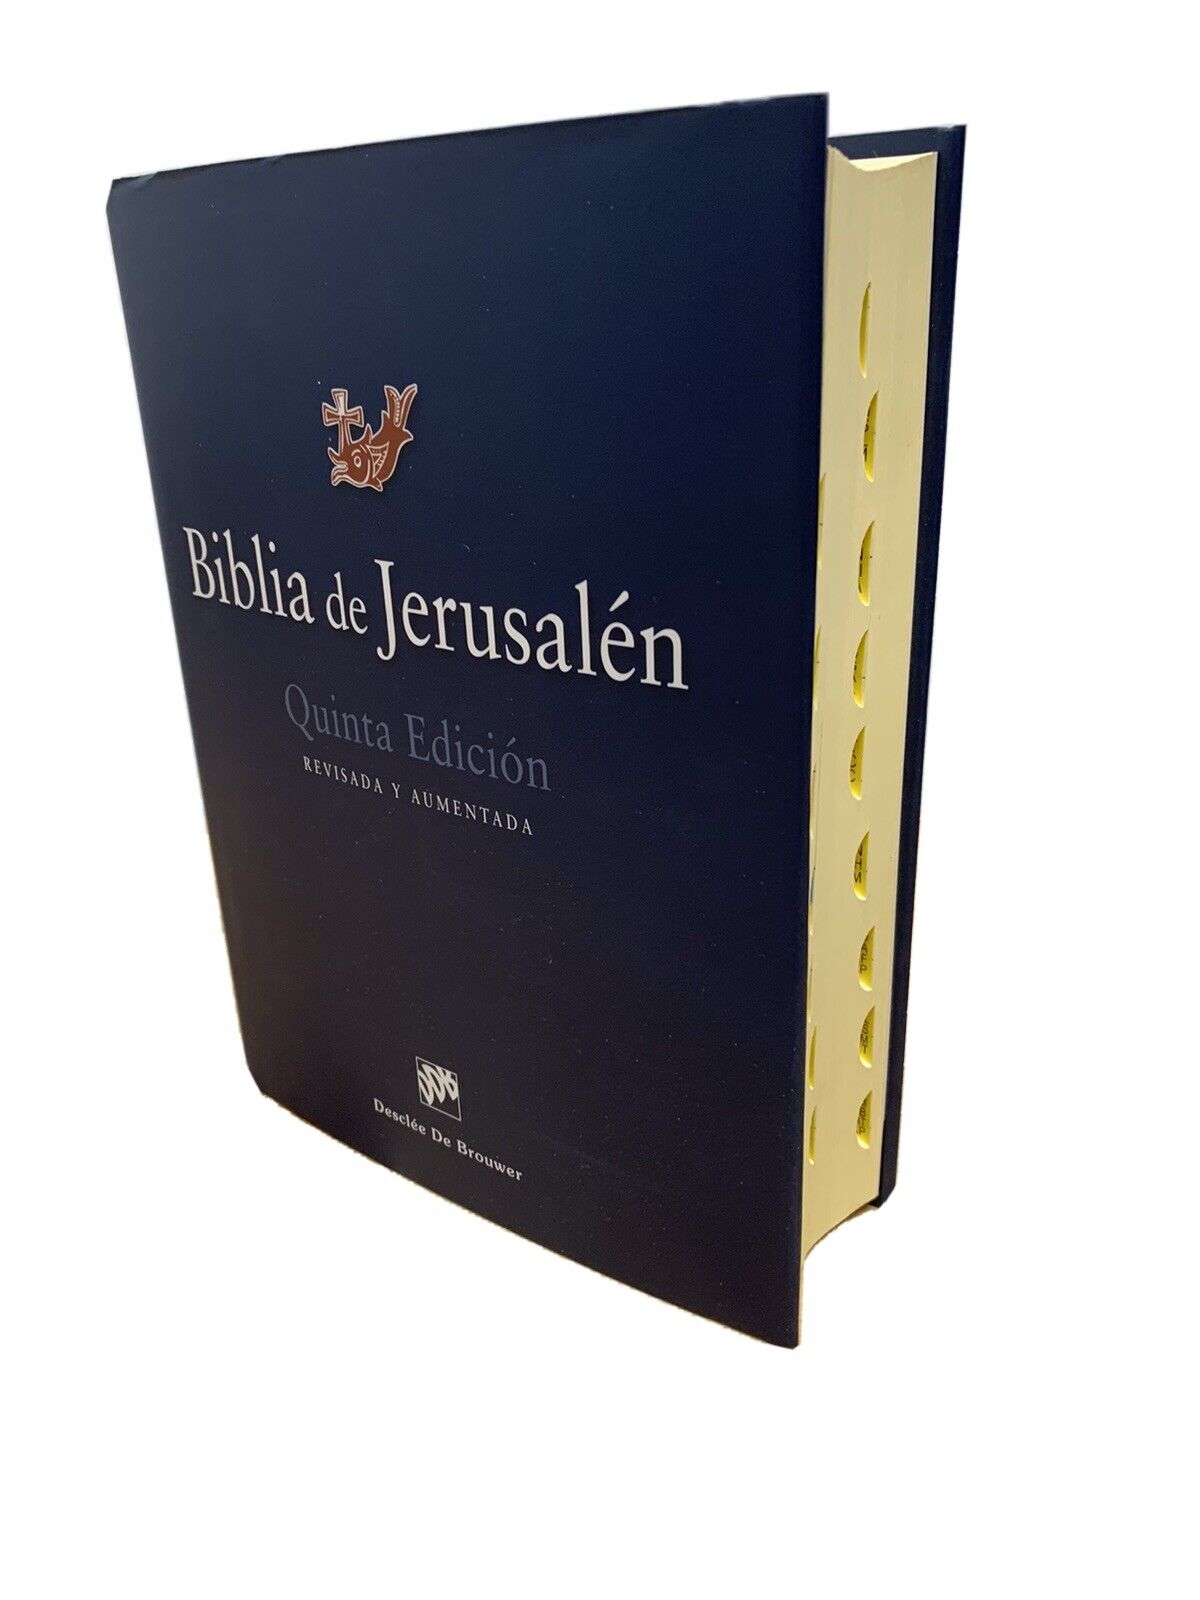 Biblia de jerusalen quinta edicion revisada y aumentada tapa dura con indice 